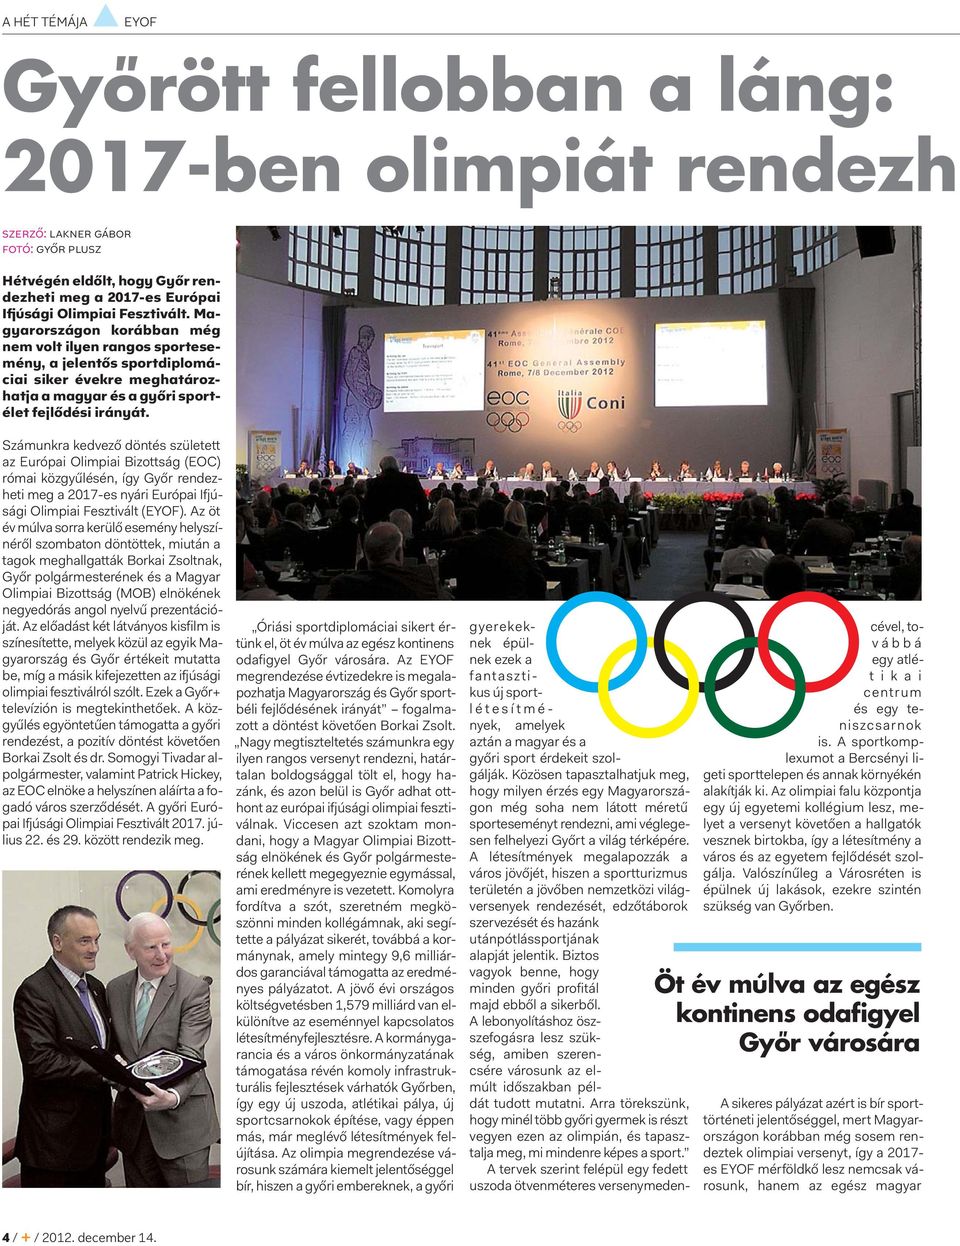 Számunkra kedvező döntés született az Európai Olimpiai Bizottság (EOC) római közgyűlésén, így Győr rendezheti meg a 2017-es nyári Európai Ifjúsági Olimpiai Fesztivált (EYOF).